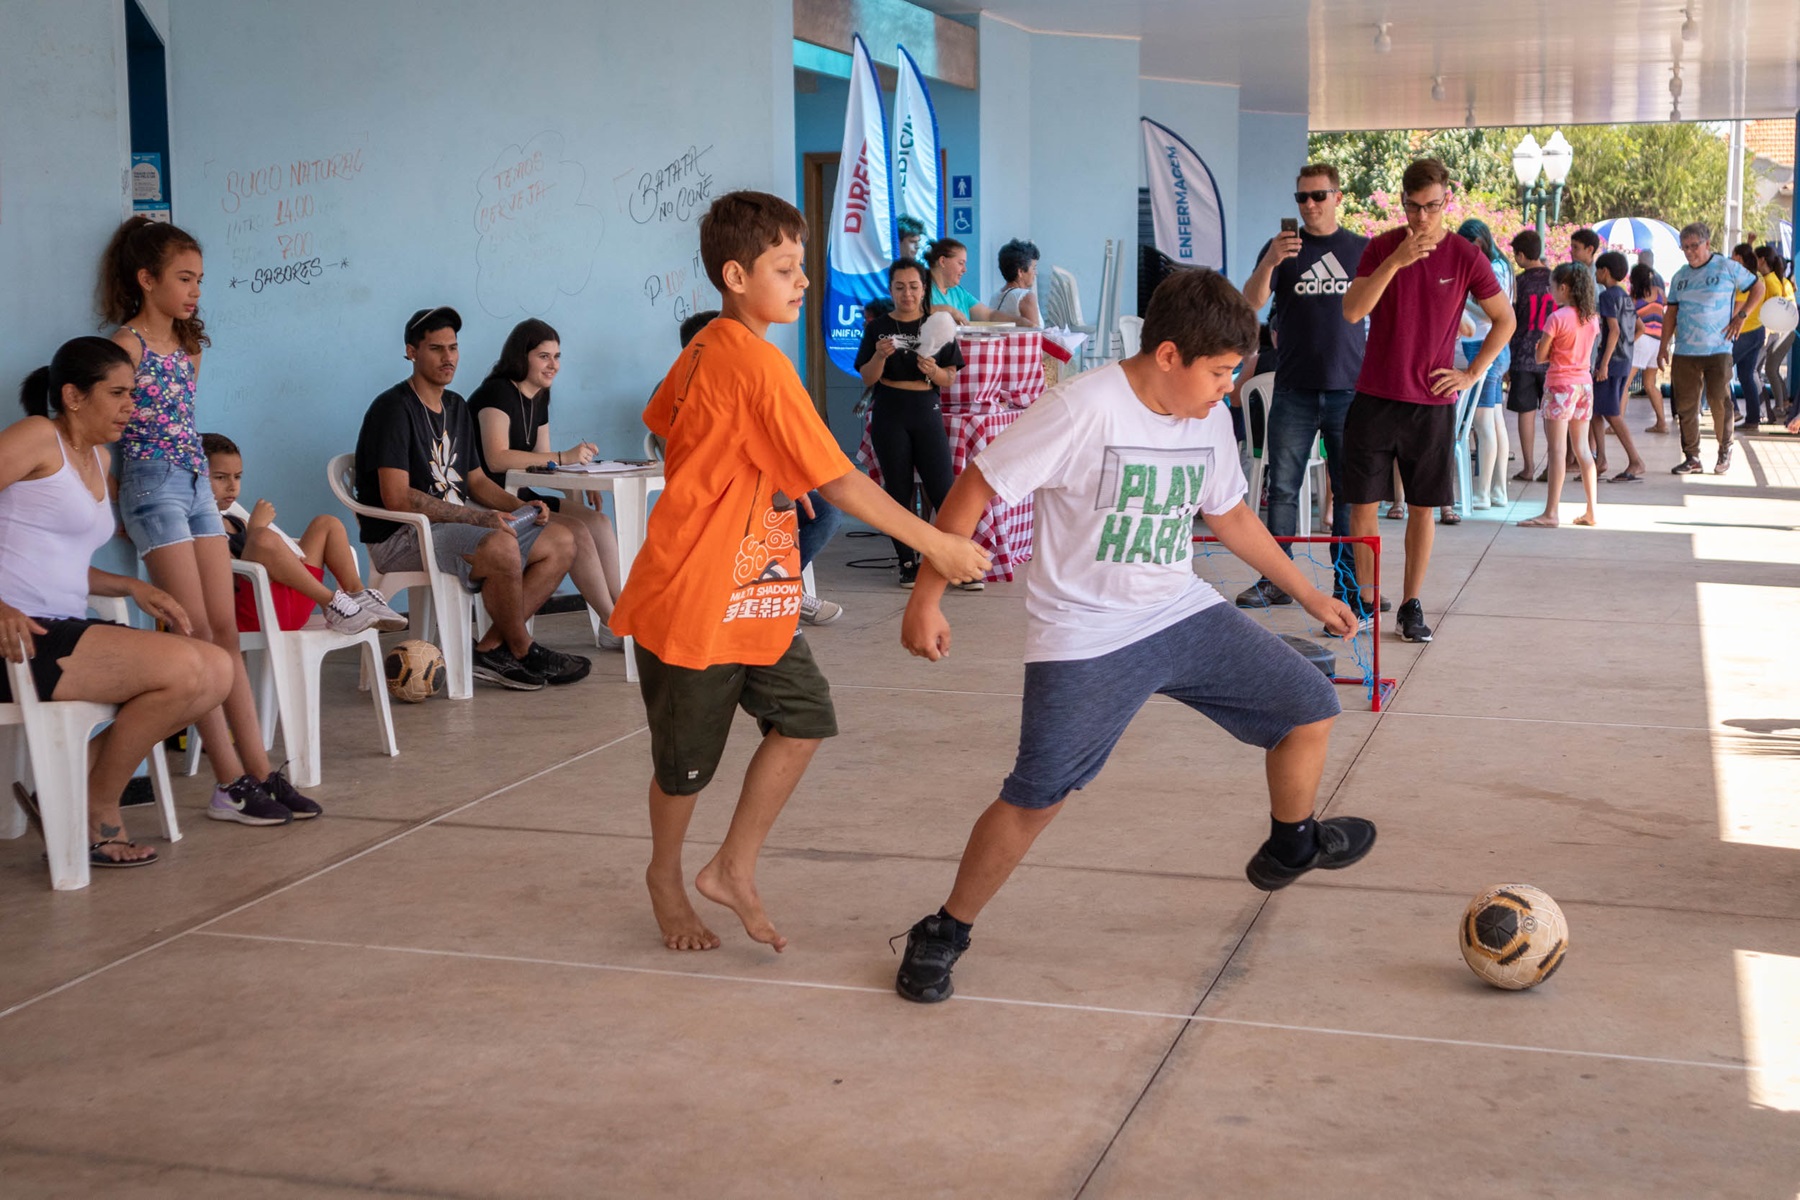 Atividades esportivas ocorreram na praça central e foram orientadas por alunos dos cursos Unifipa. Foto: Henrique Alonso Camilo / Prefeitura Municipal de Urupês.